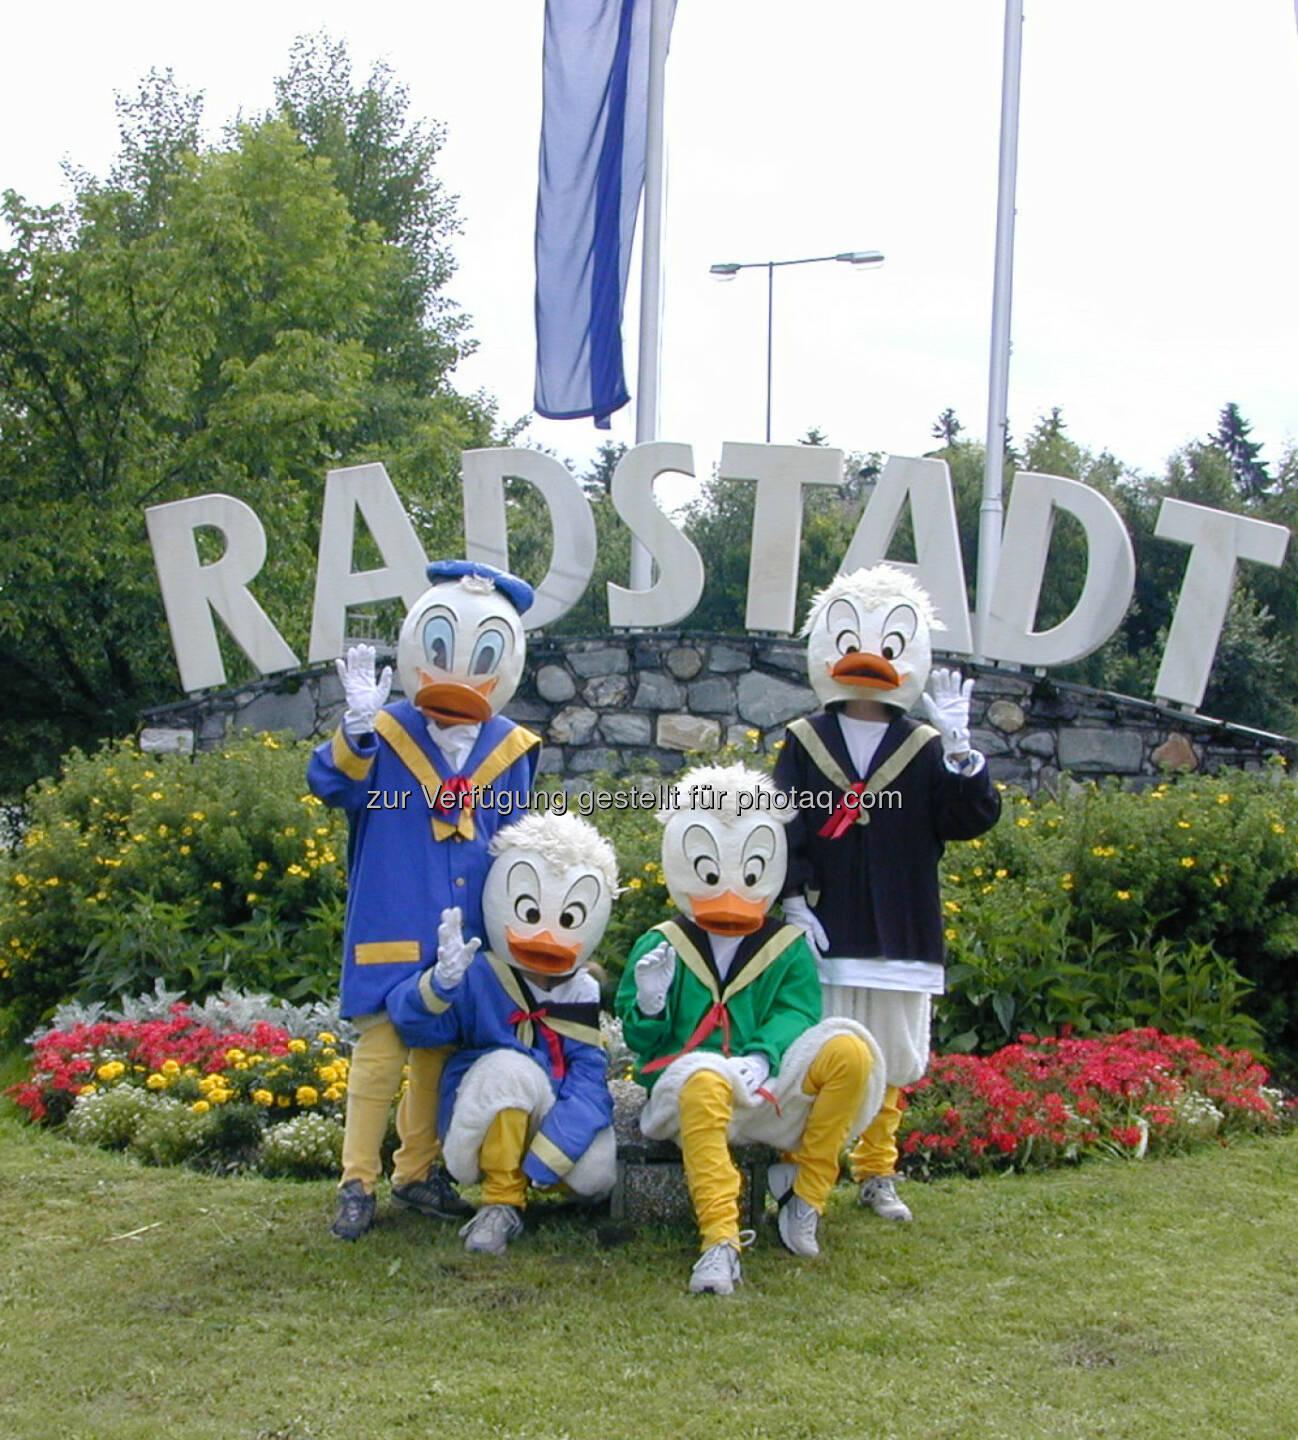 Radstadt: Radstadt - eine Stadt in Kinderhand